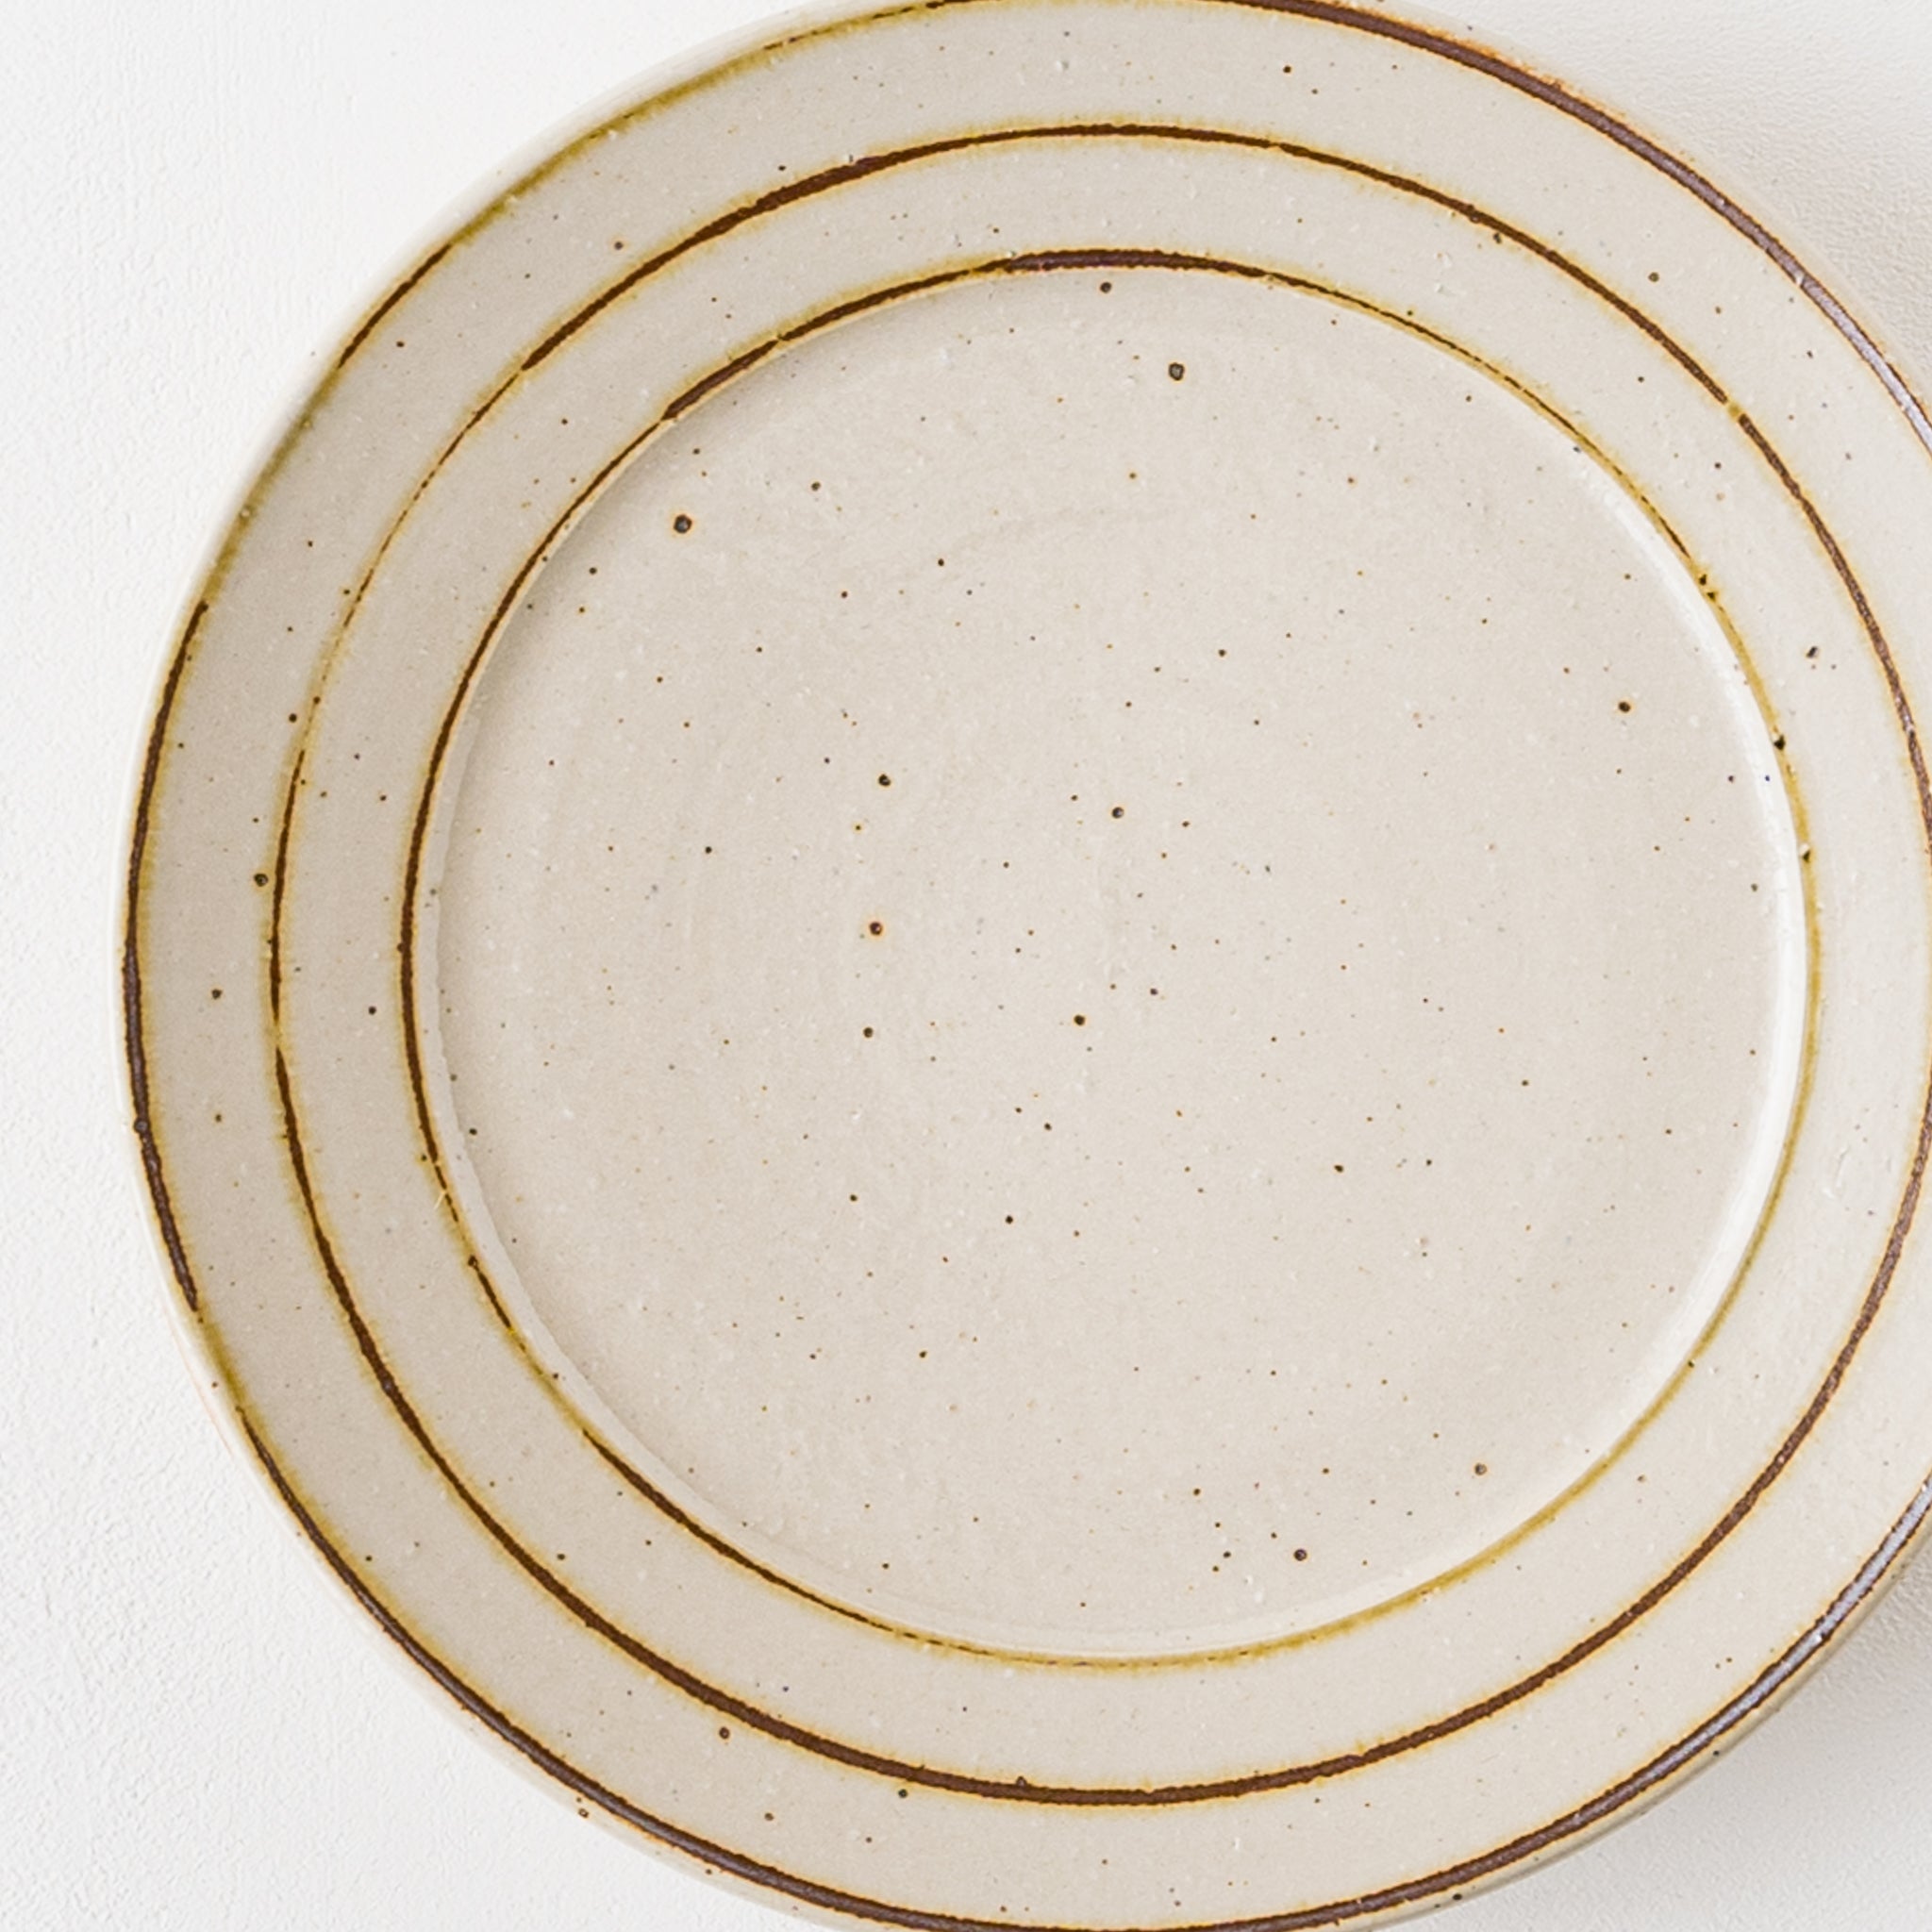 鉄絵の独楽筋がおしゃれで素敵な冨本大輔さんの灰釉鉄絵7寸リム皿